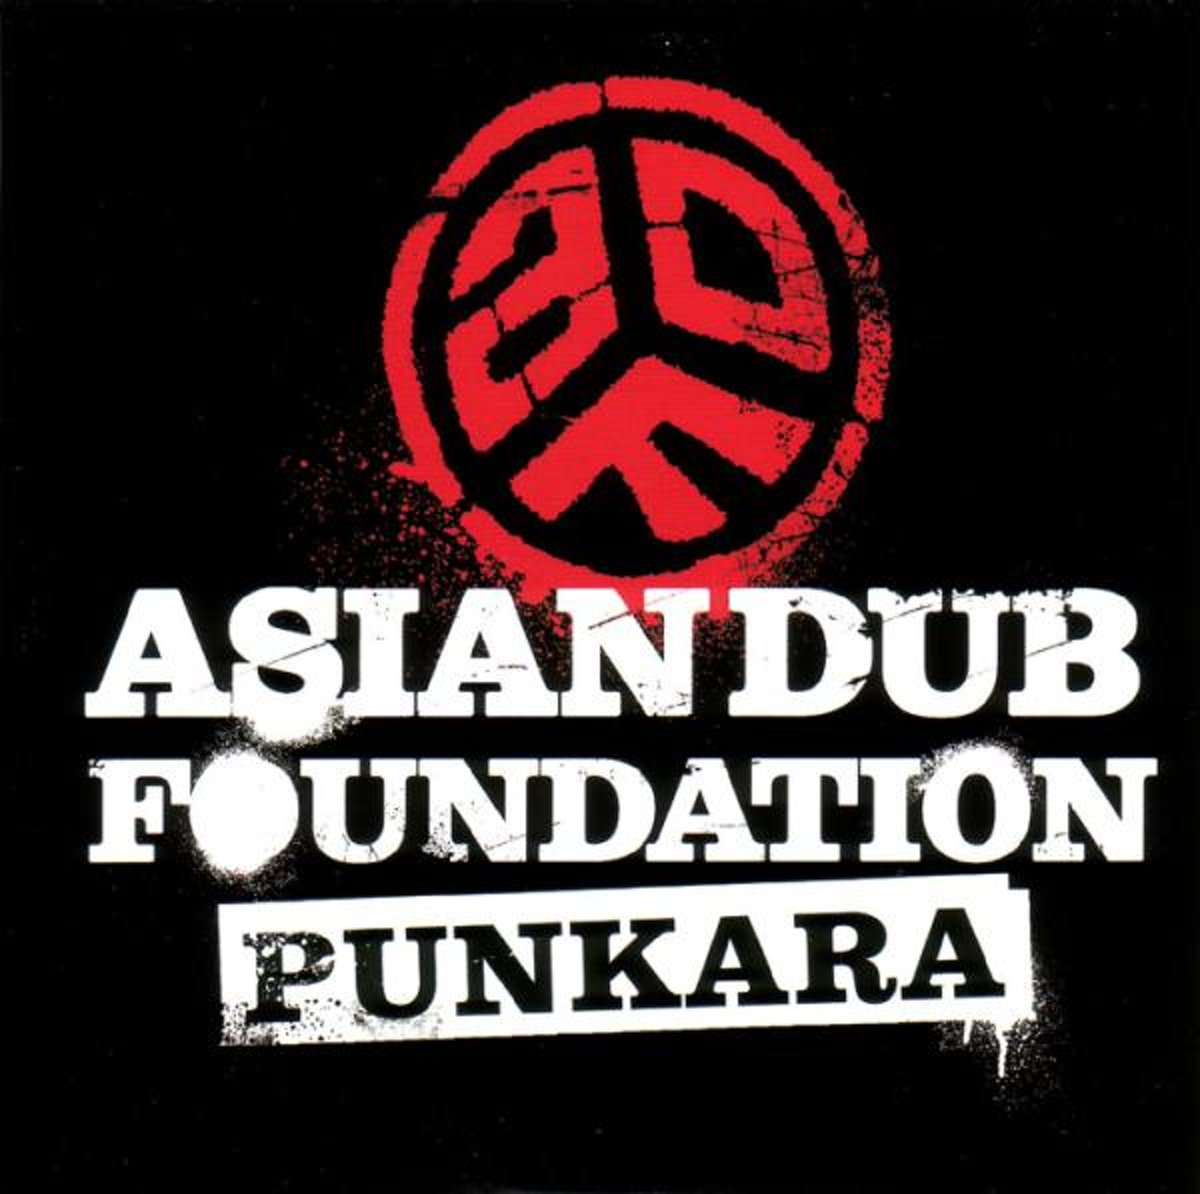 Punkara | Asian Dub Foundation